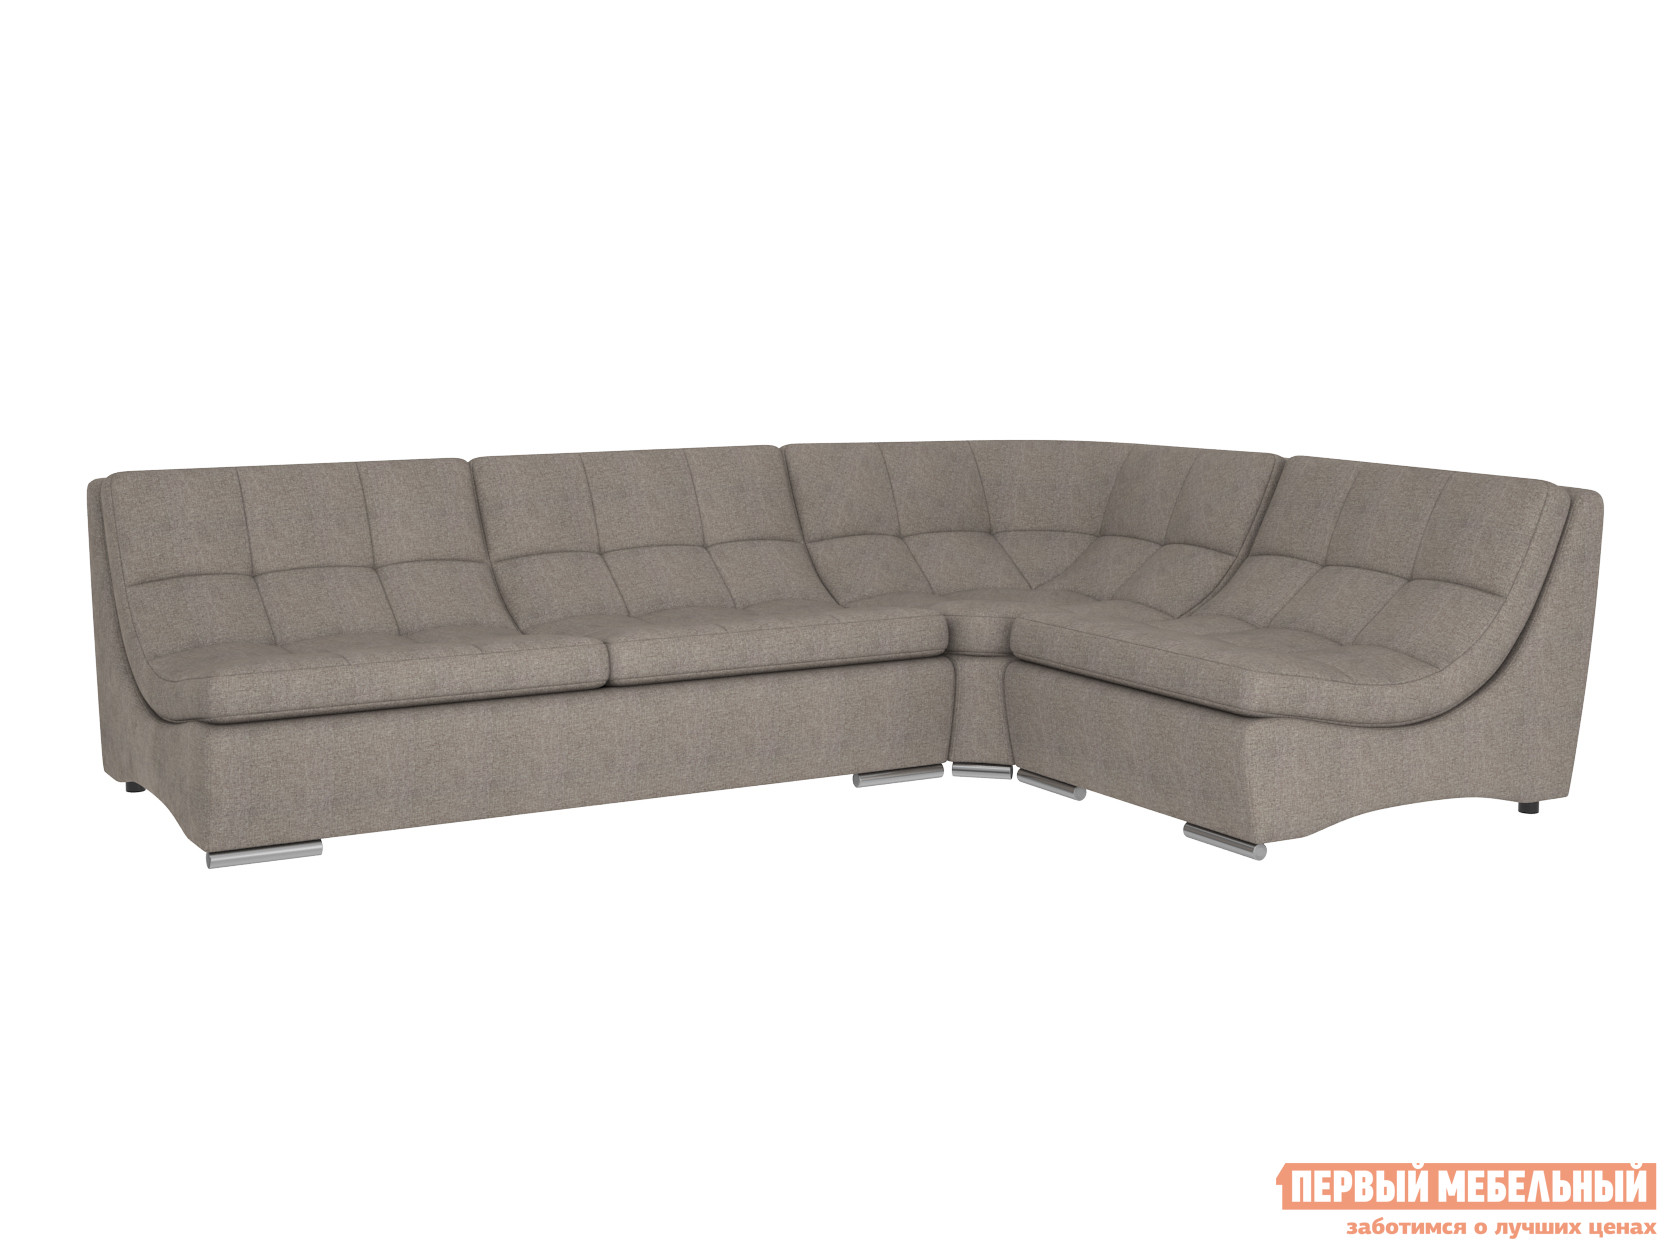 Угловой диван  Модульная система Сан-Диего, вариант 2 Серо-бежевый, рогожка Мягкая Линия 75537